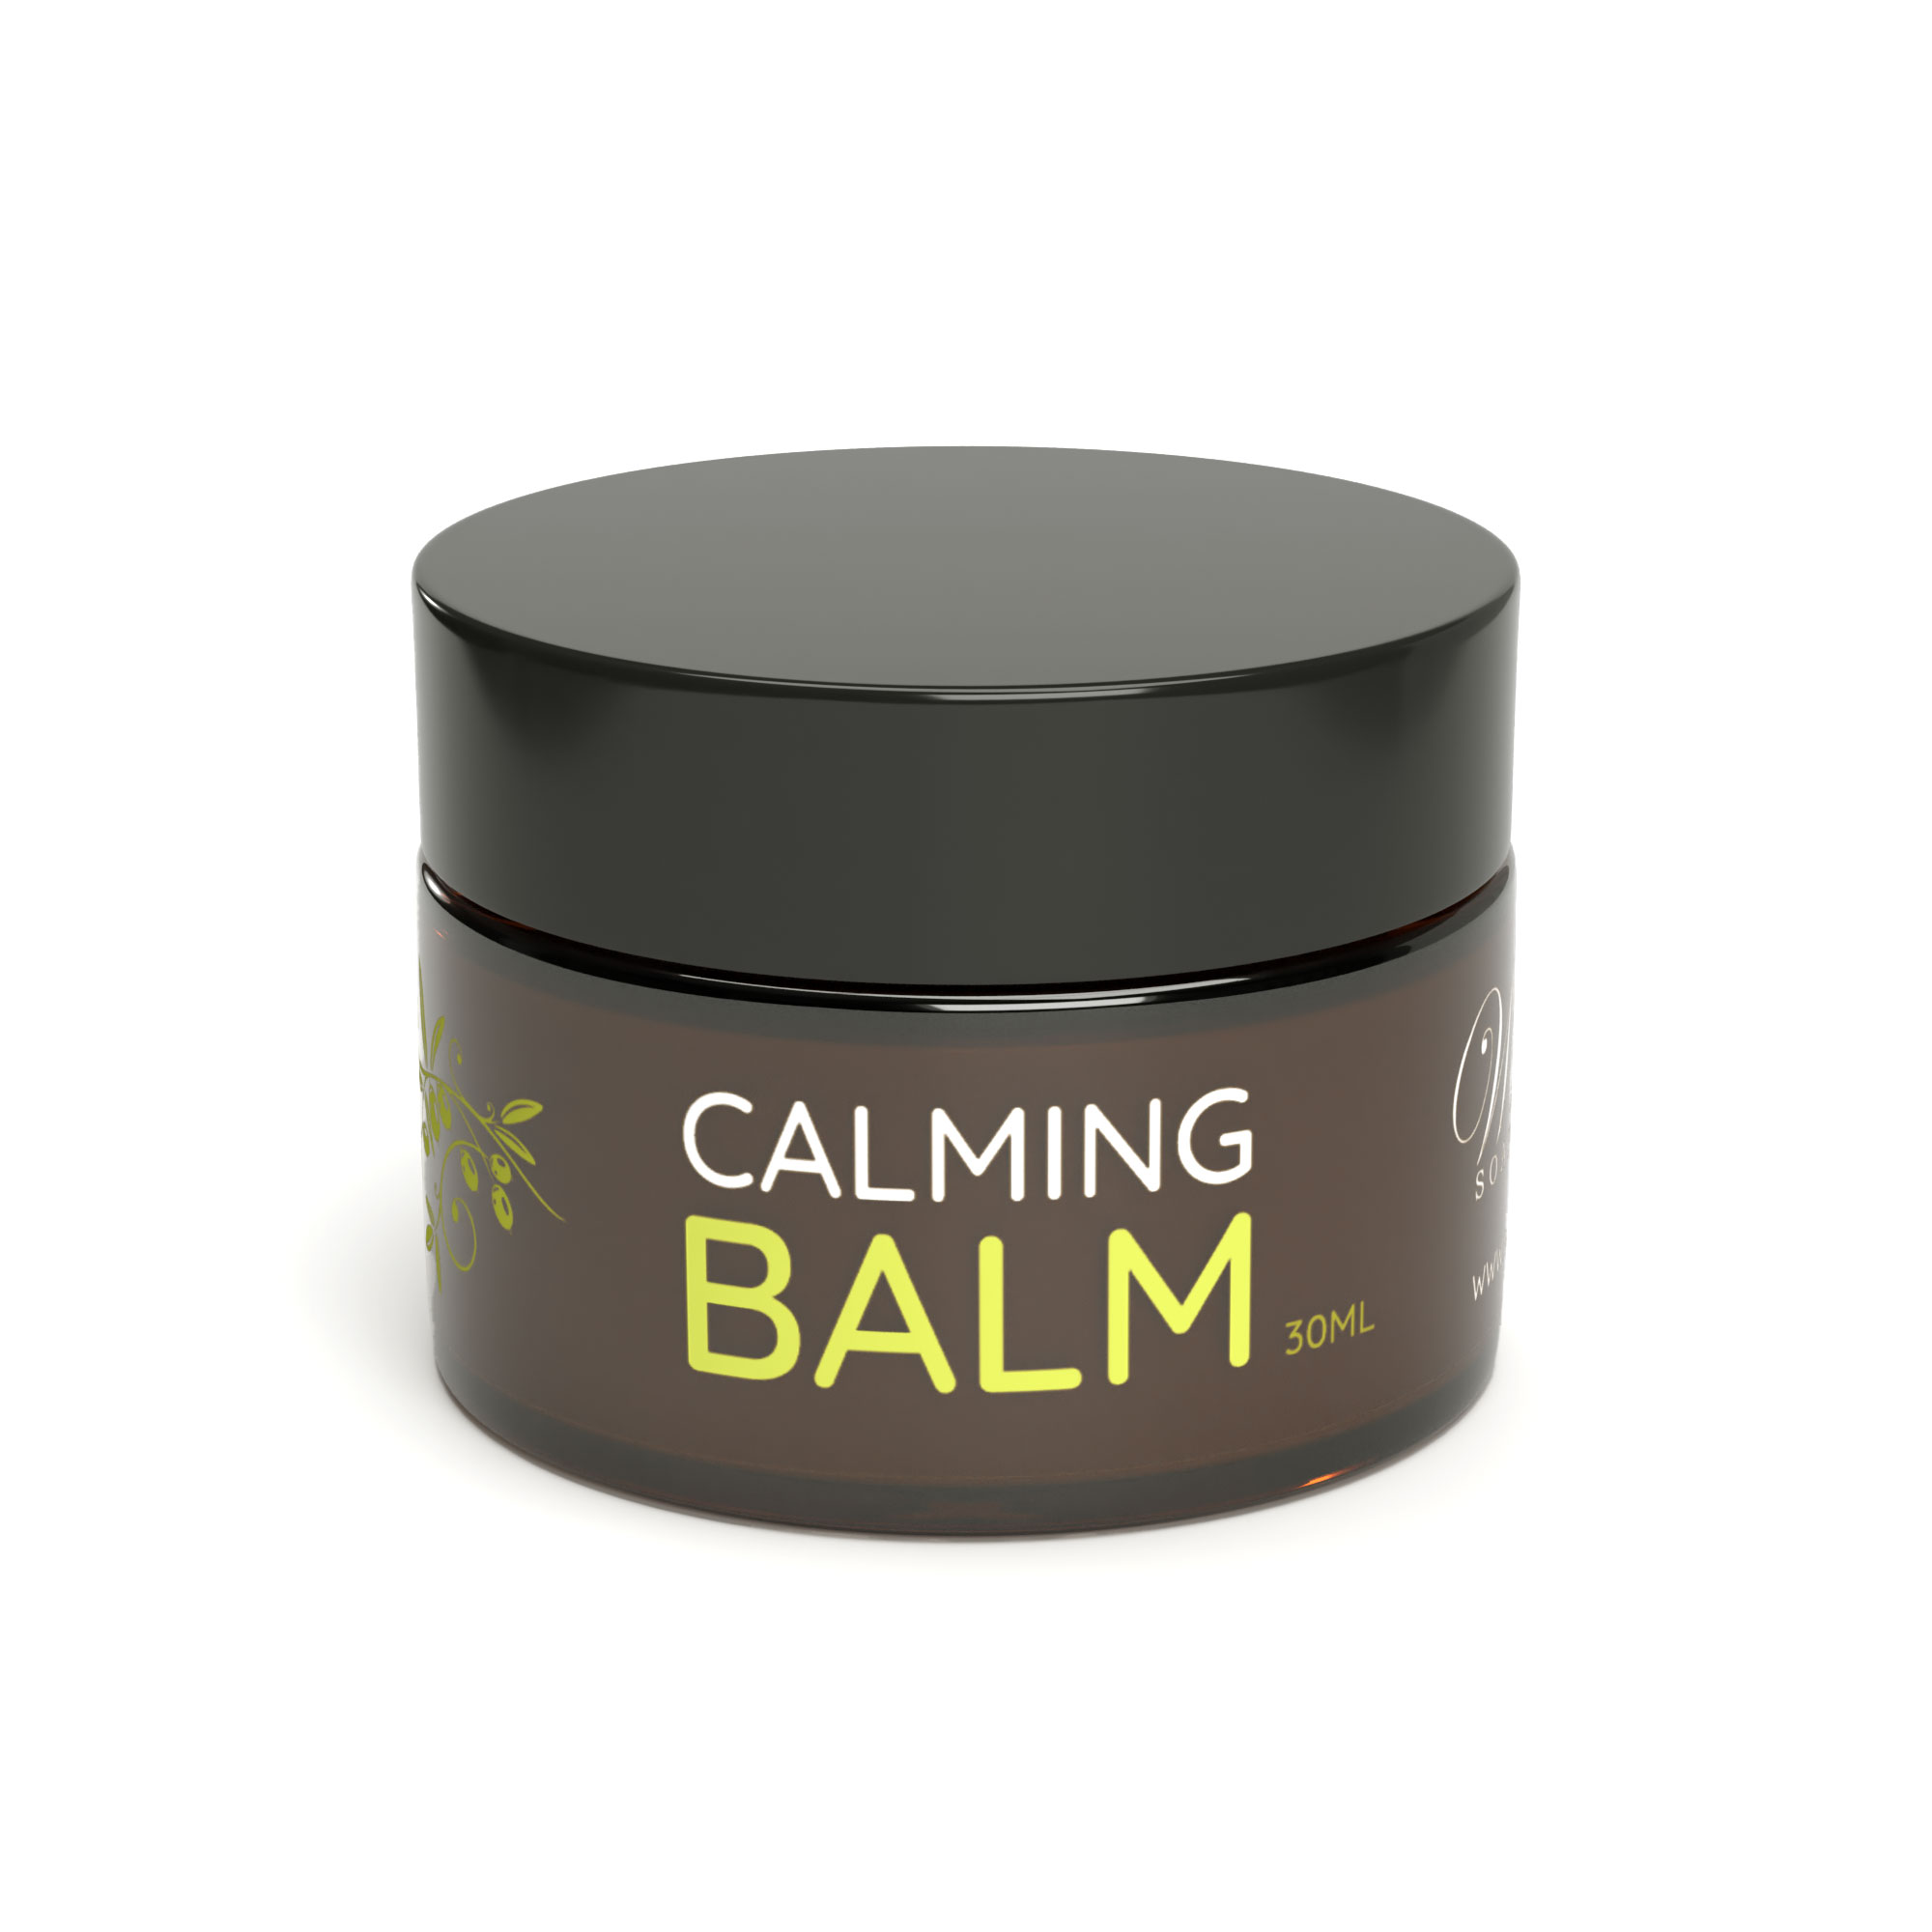 Calming Balm 30ml - Waiheke Soap Company